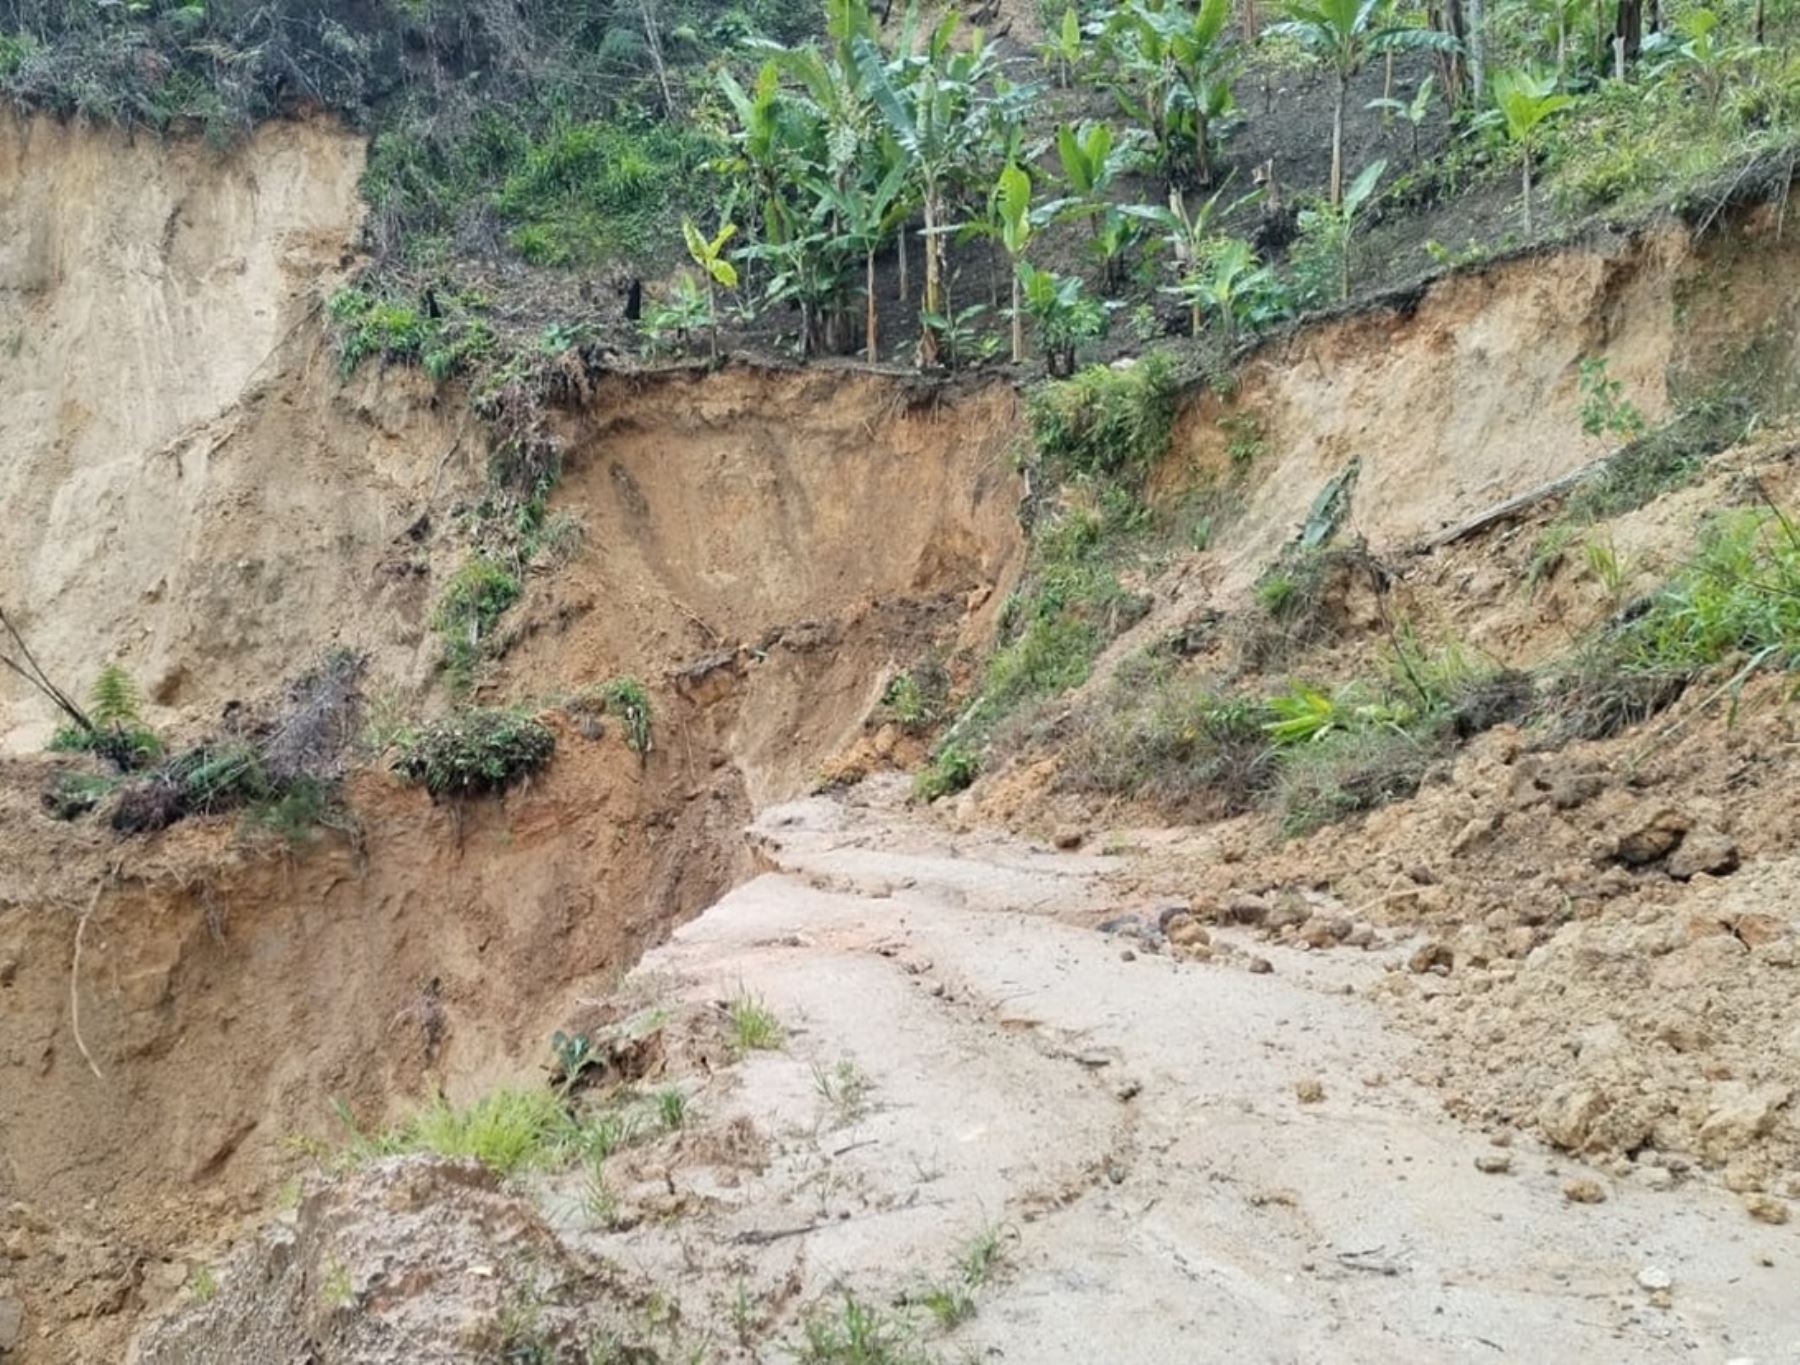 Lluvias intensas en la sierra de la región La Libertad han provocado deslizamientos que han bloqueado diversas carreteras de acceso a la provincia de Pataz. ANDINA/Difusión